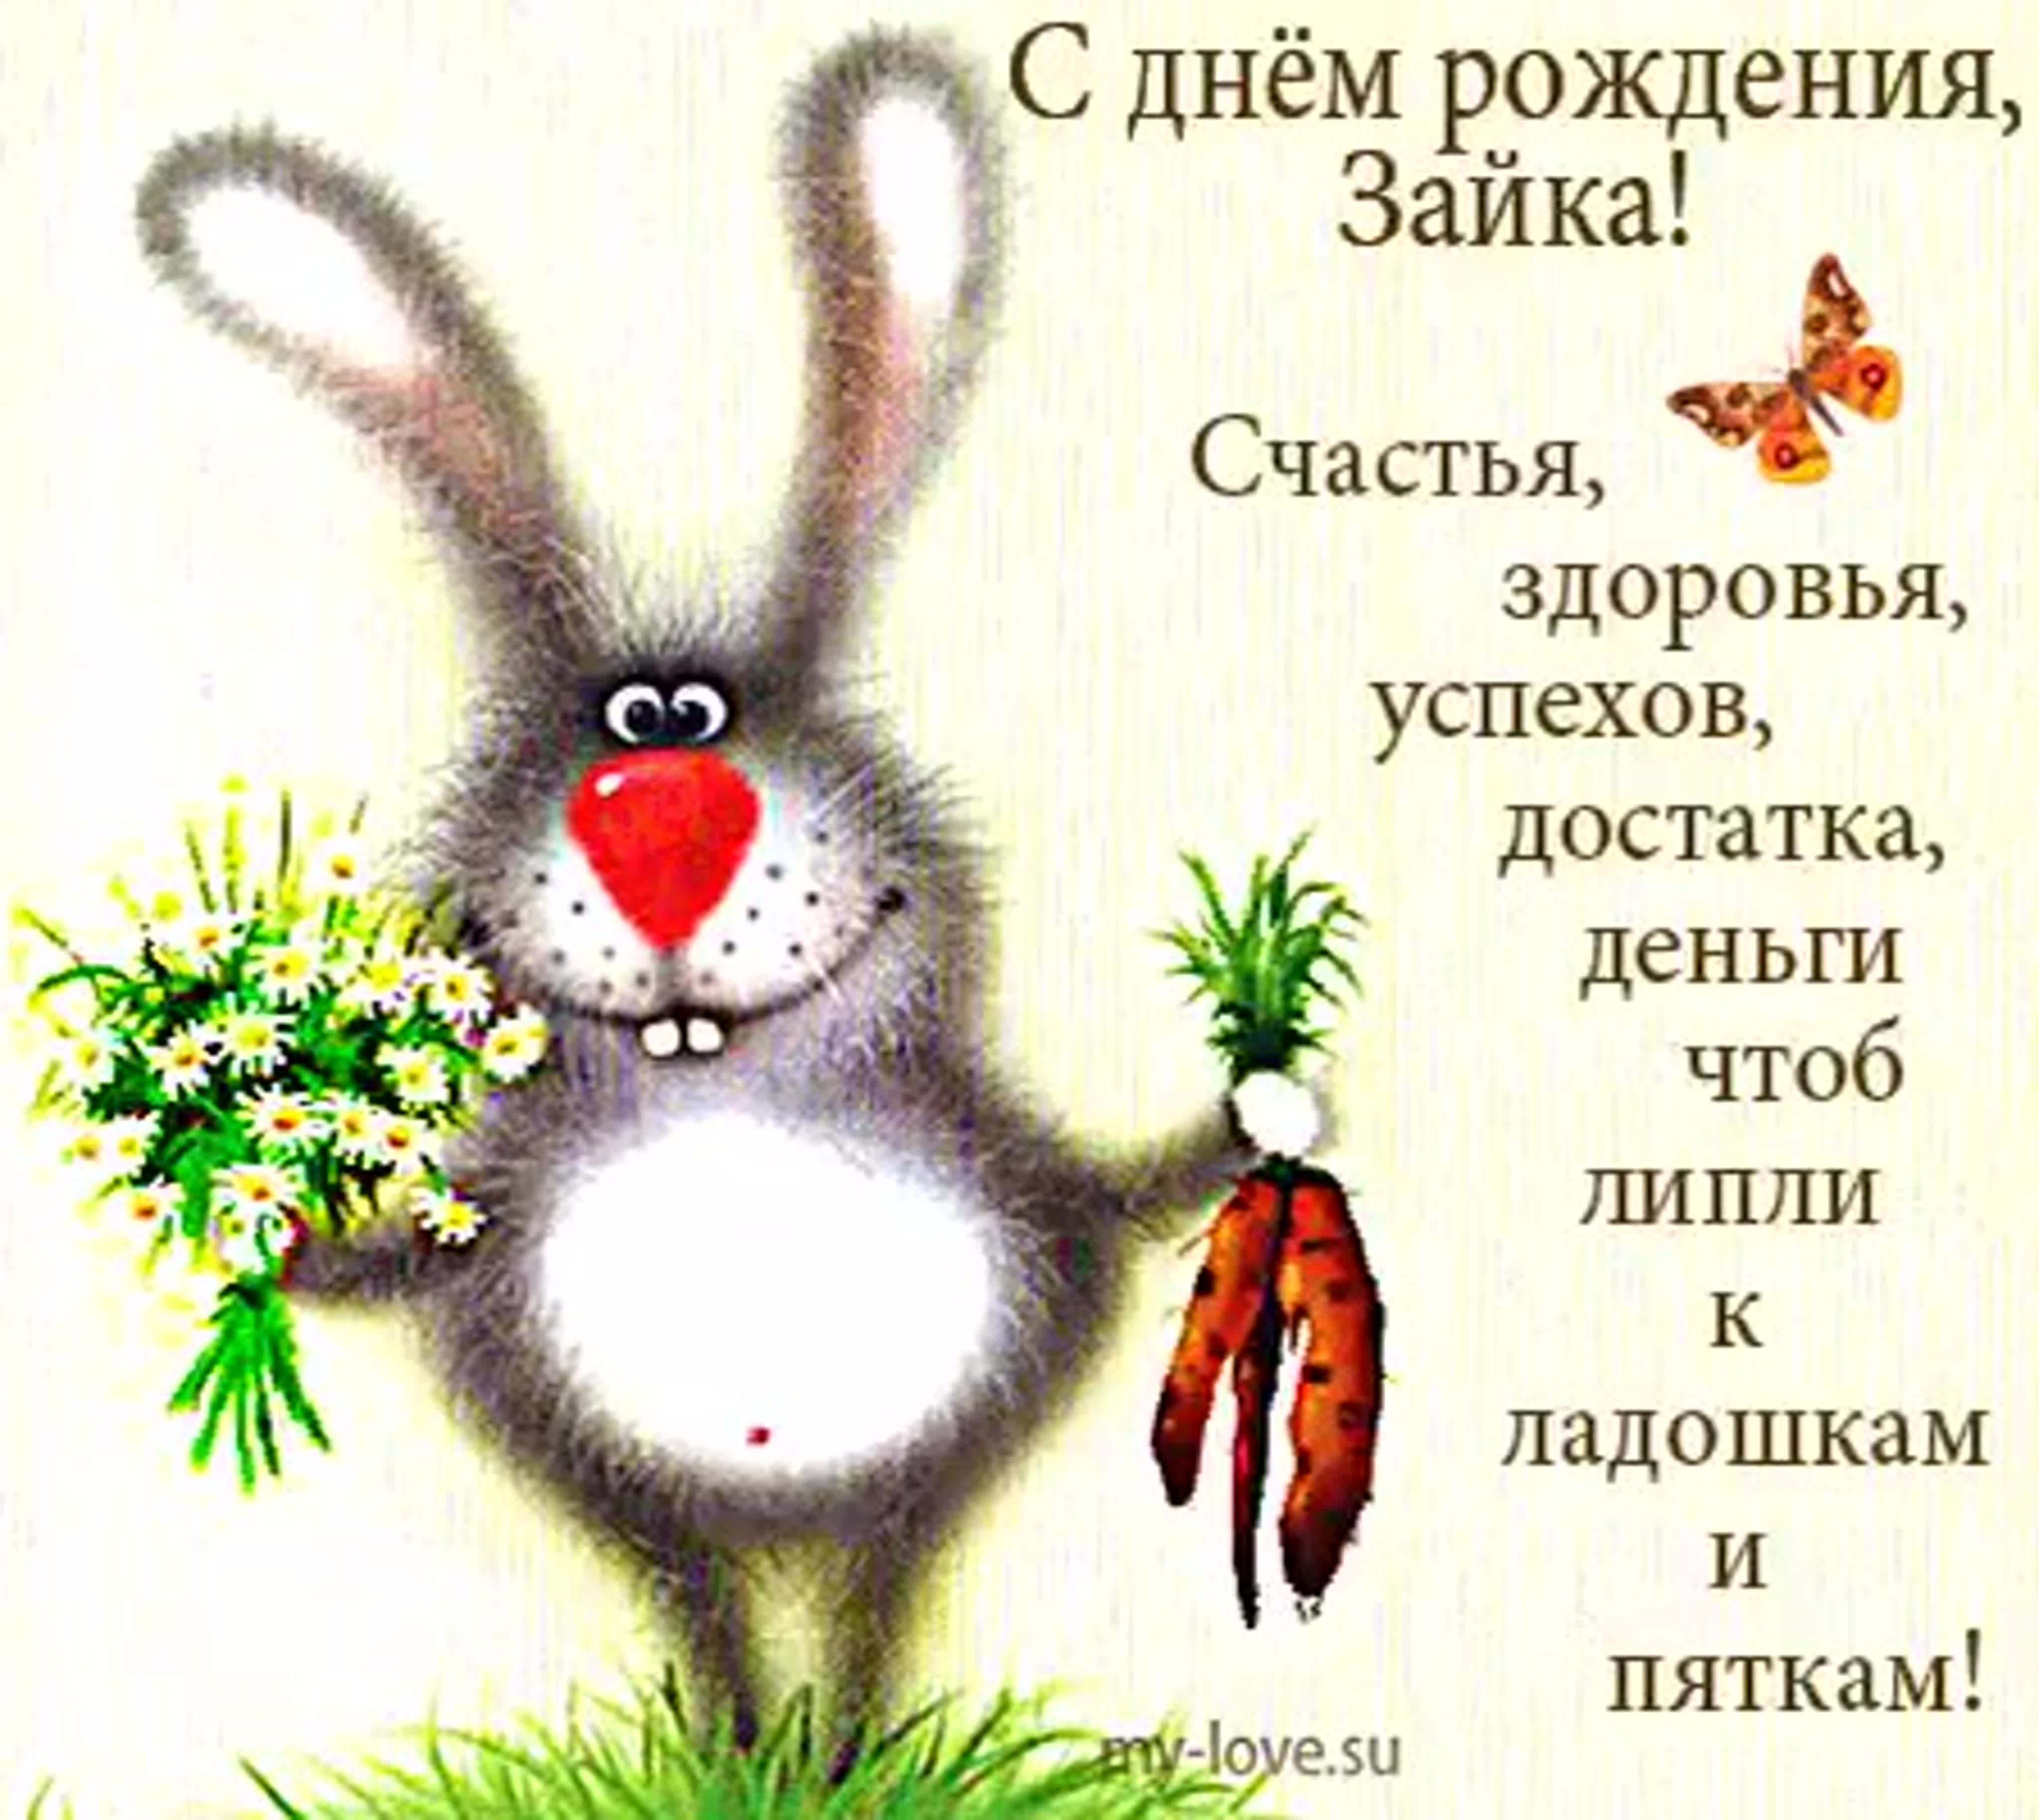 Поздравление зайца с днем рождения. День рождения зайчика. С днем рождения заяц. С днём рождения Зайка. С днем рождения зацчикз.